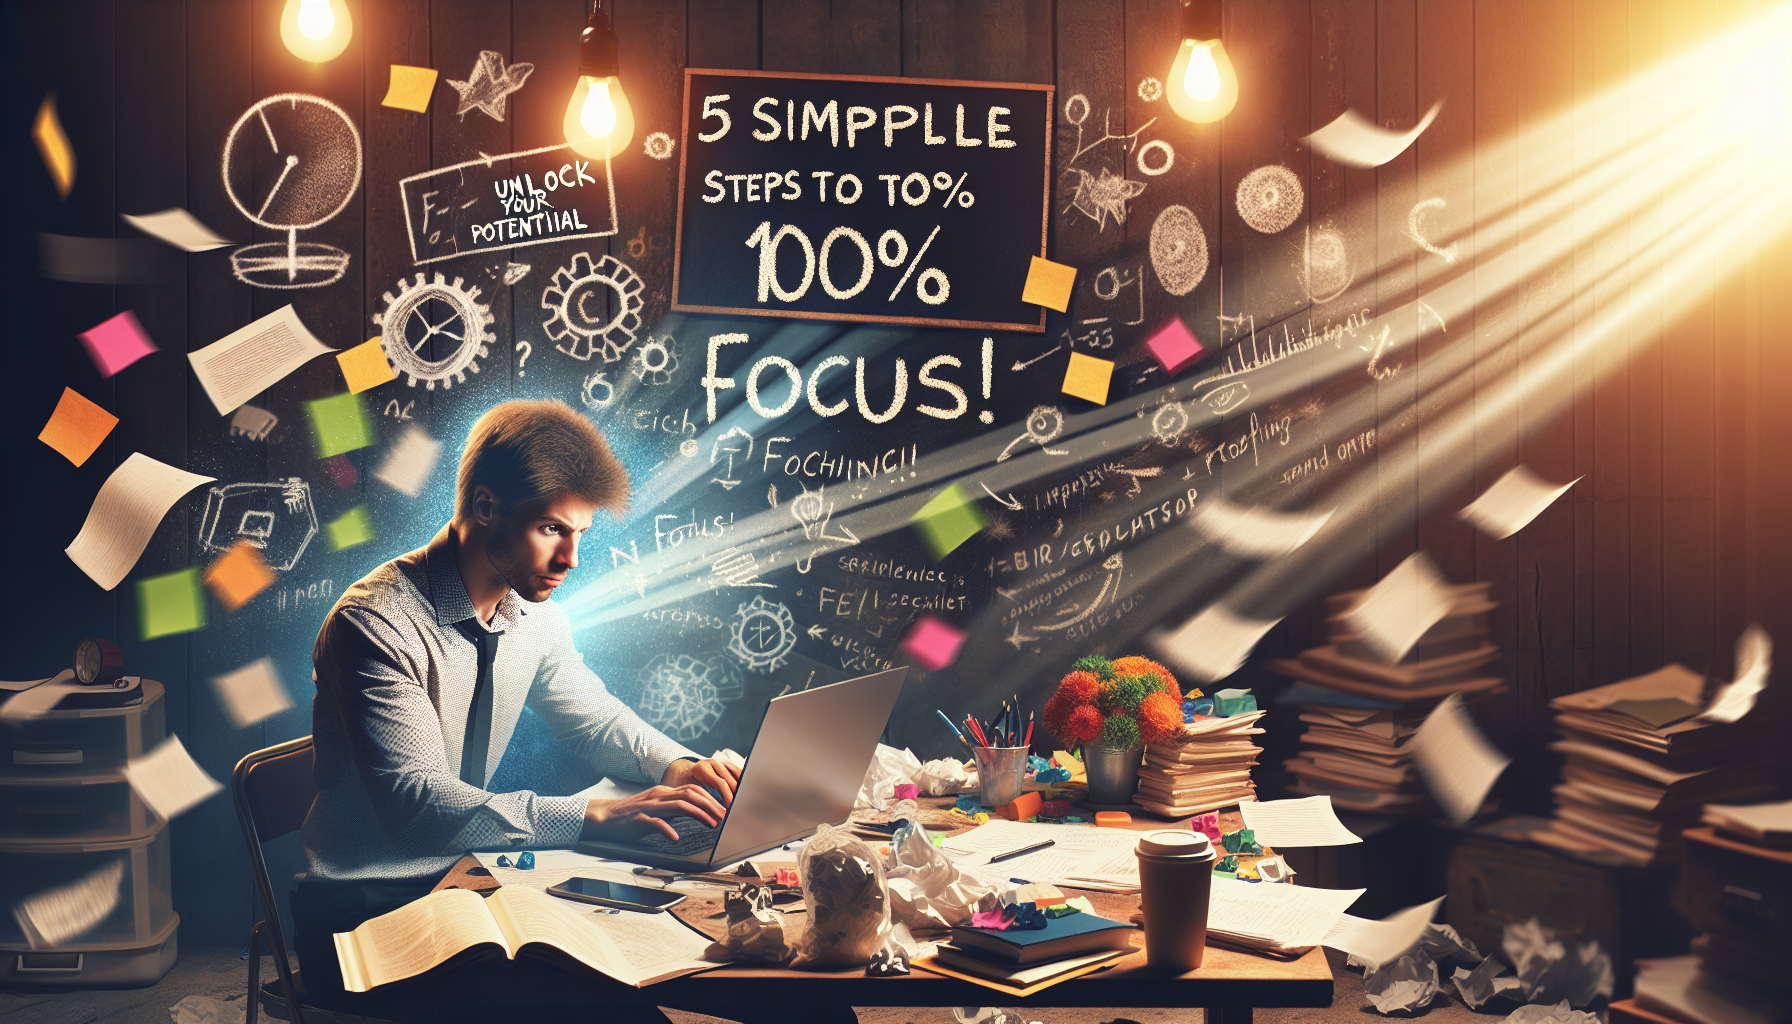 découvrez nos 5 étapes simples pour atteindre 100% de concentration et améliorer votre productivité. apprenez des techniques éprouvées pour rester focalisé et maximiser votre efficacité dans vos tâches quotidiennes.